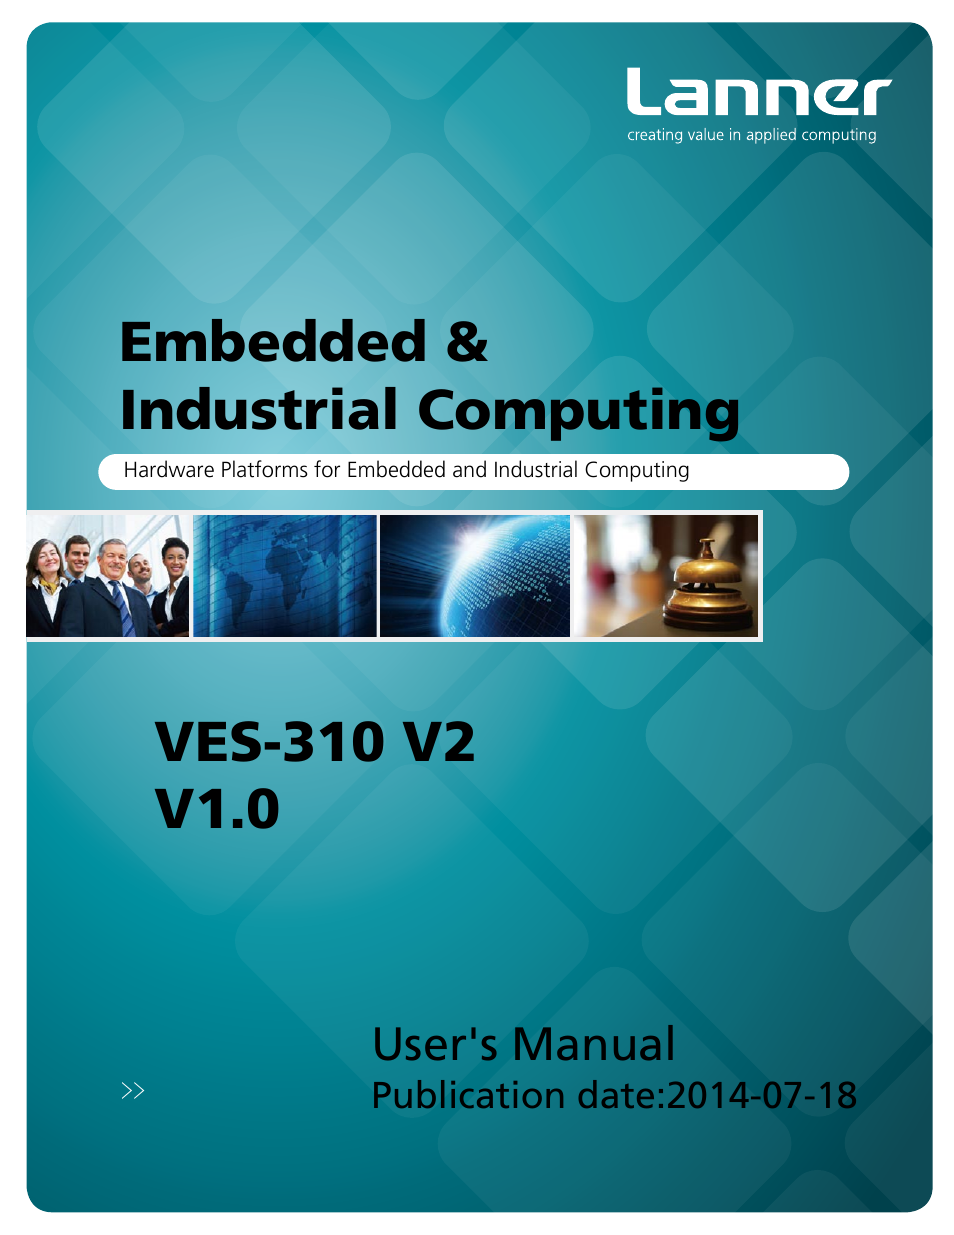 VES-310 V2